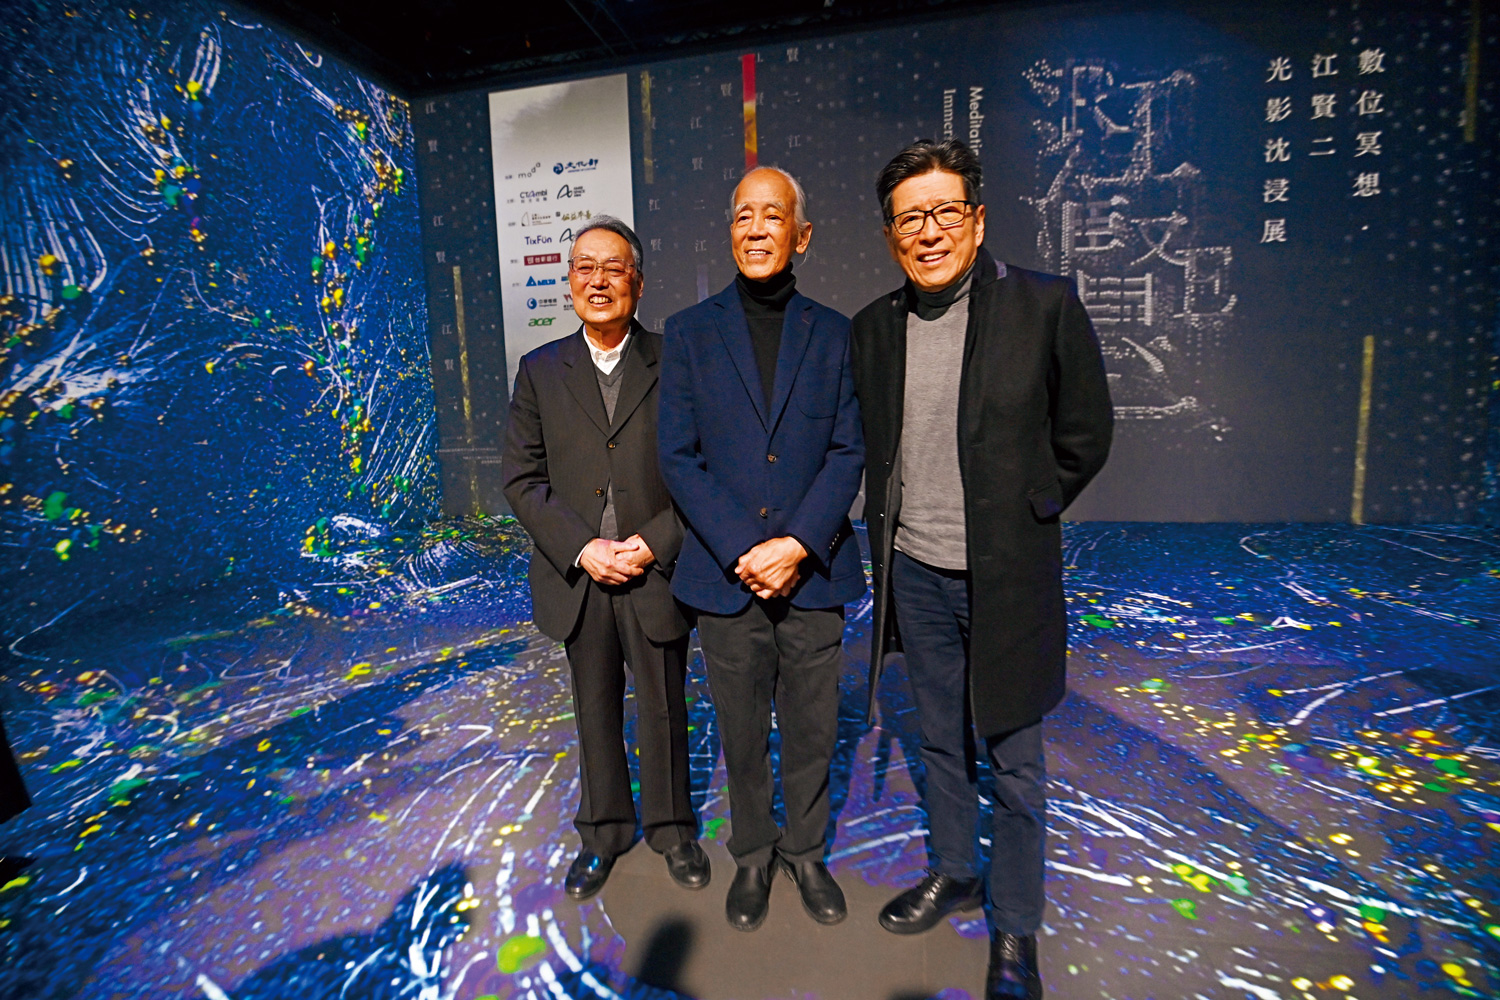 藝術家江賢二（中）與嚴長壽（右）一同出席開幕活動，三人都讚展覽能夠感動人心。（攝影：程思迪）